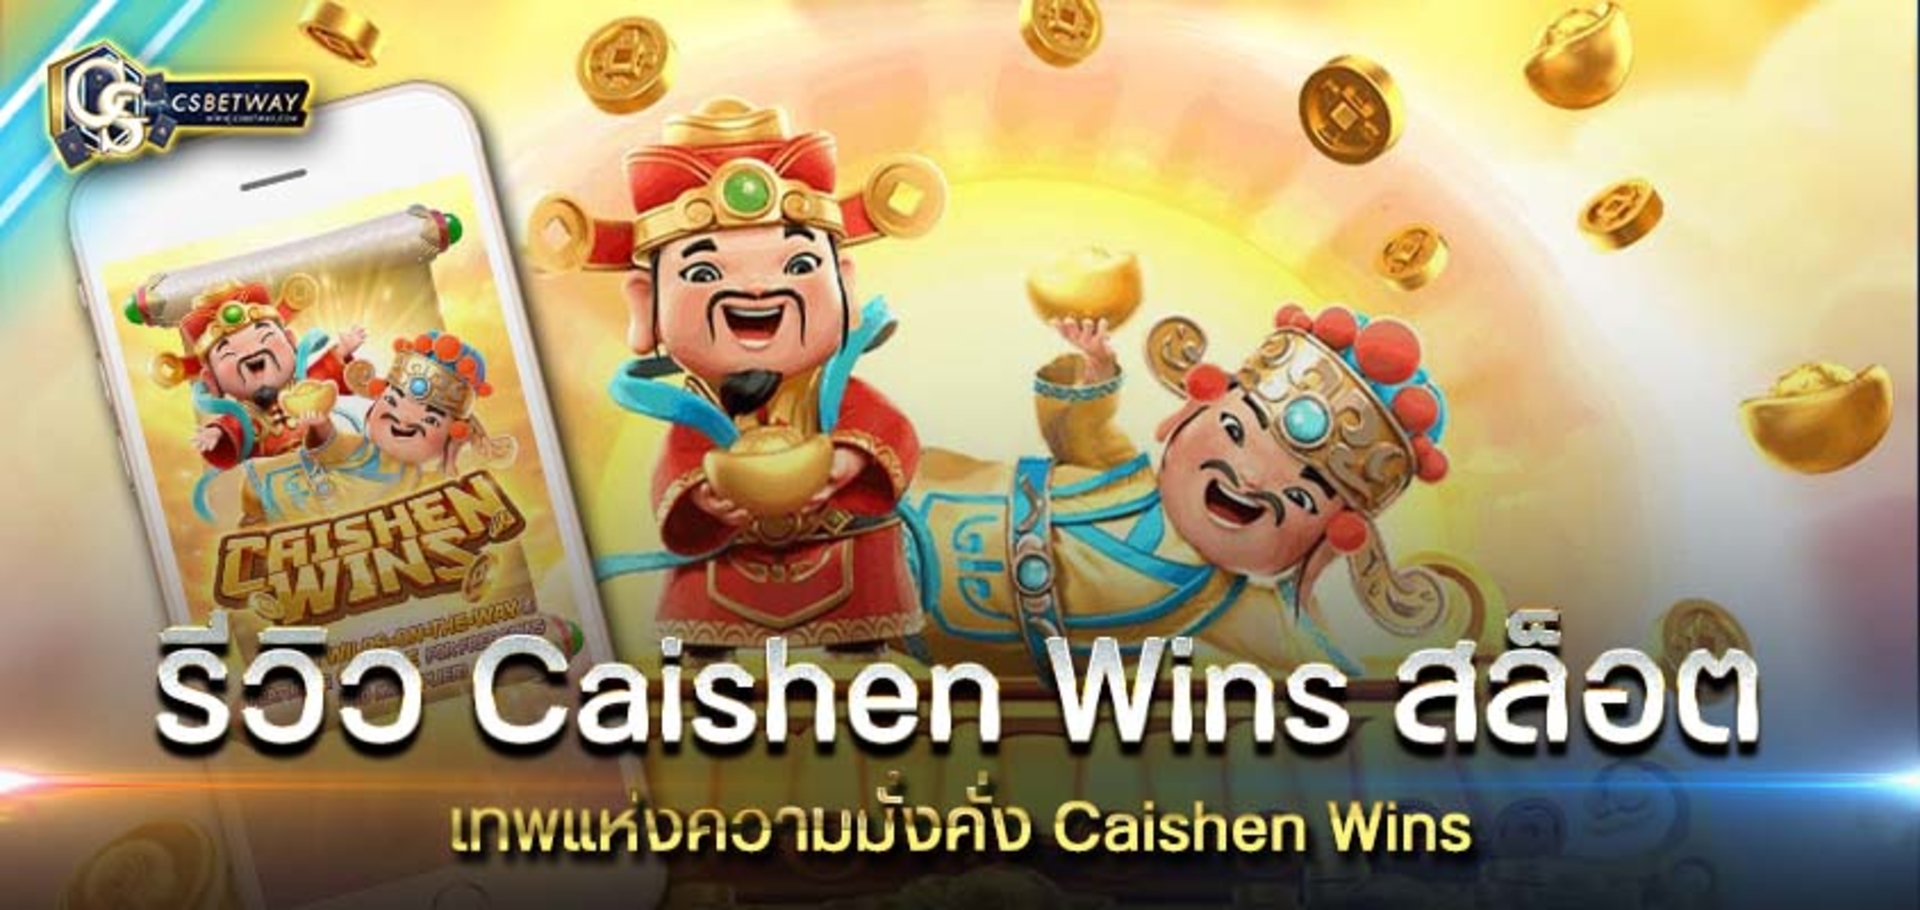 รีวิว Caishen Wins สล็อต เทพแห่งความมั่งคั่ง Caishen Wins สล็อต ลงทุนหลักร้อย ได้เงินหลักแสน